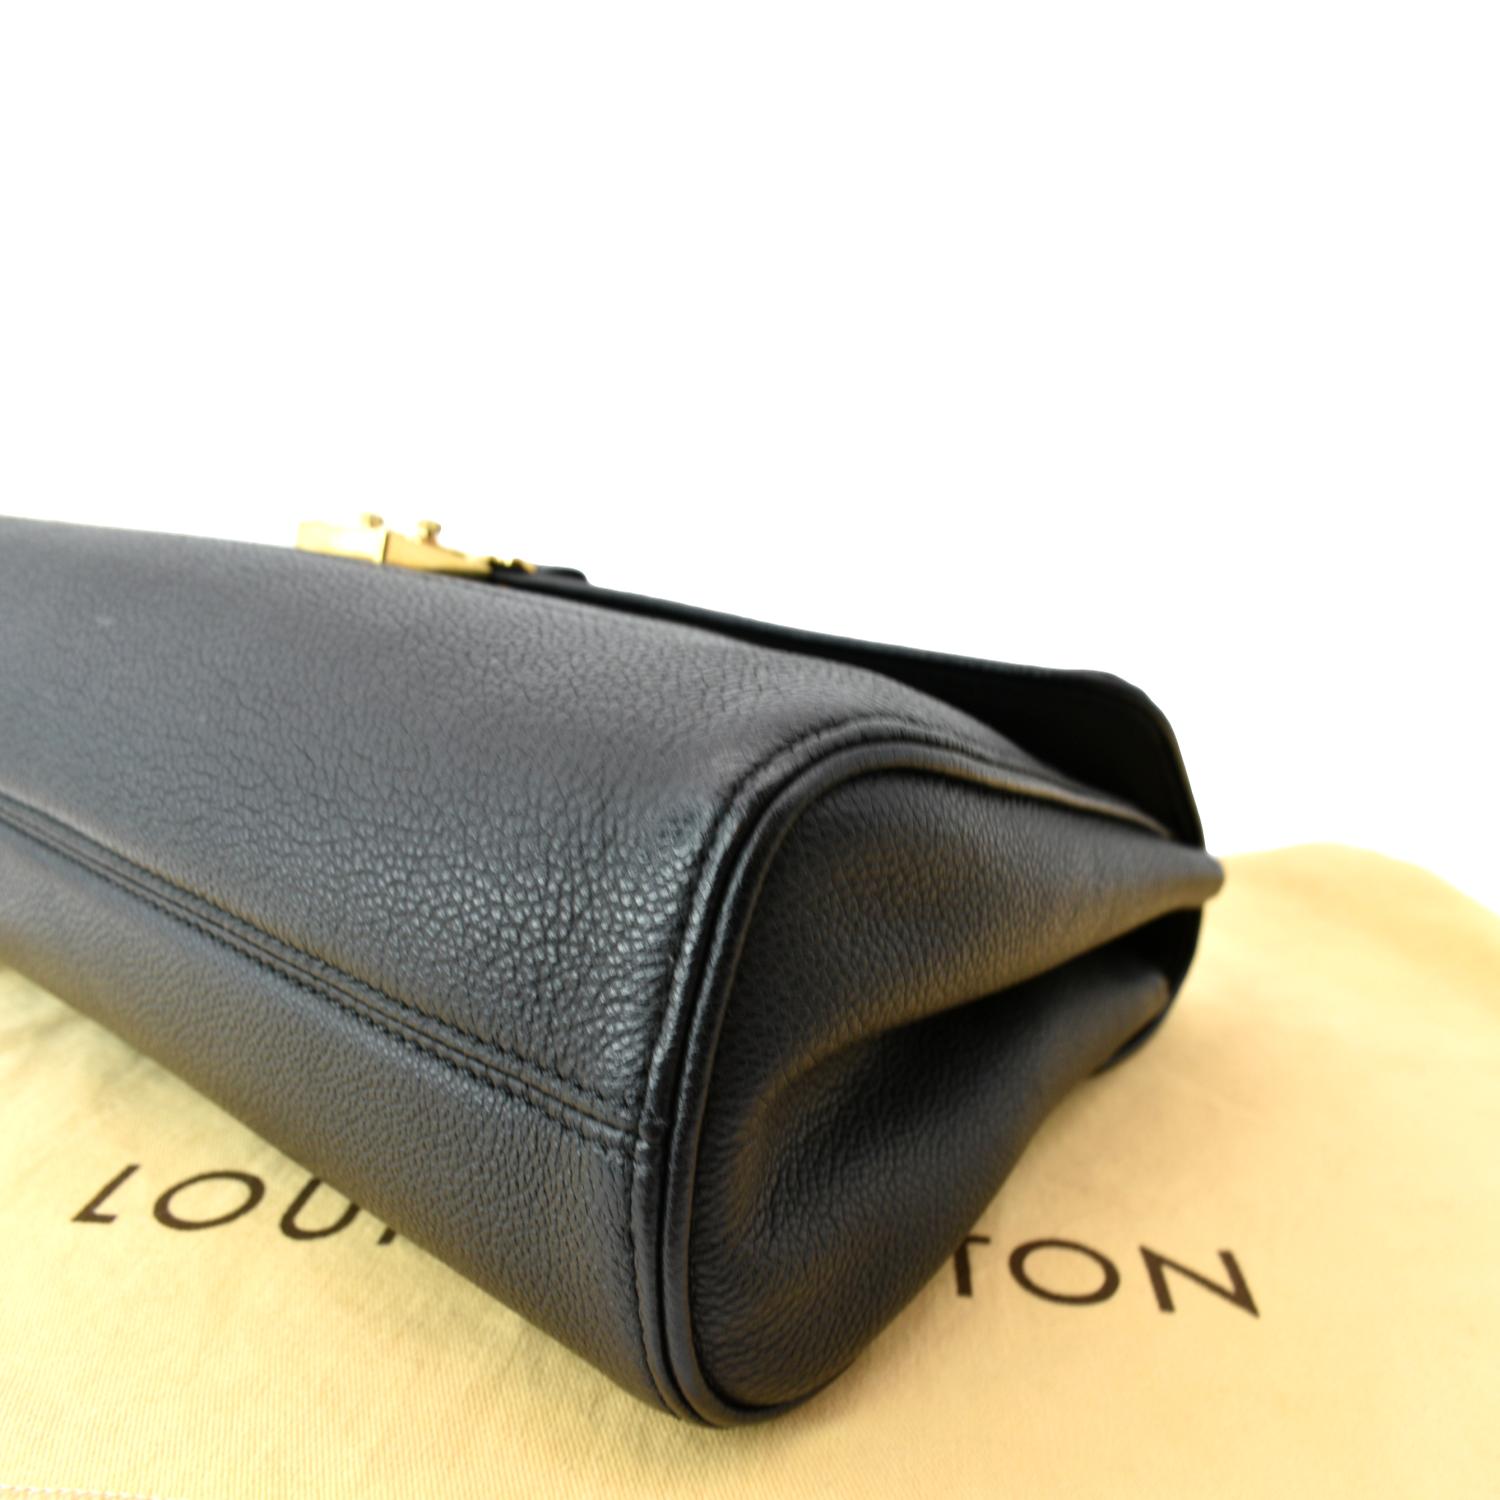 Louis Vuitton - Authenticated Saint-Germain Handbag - Leather Blue Plain for Women, Very Good Condition